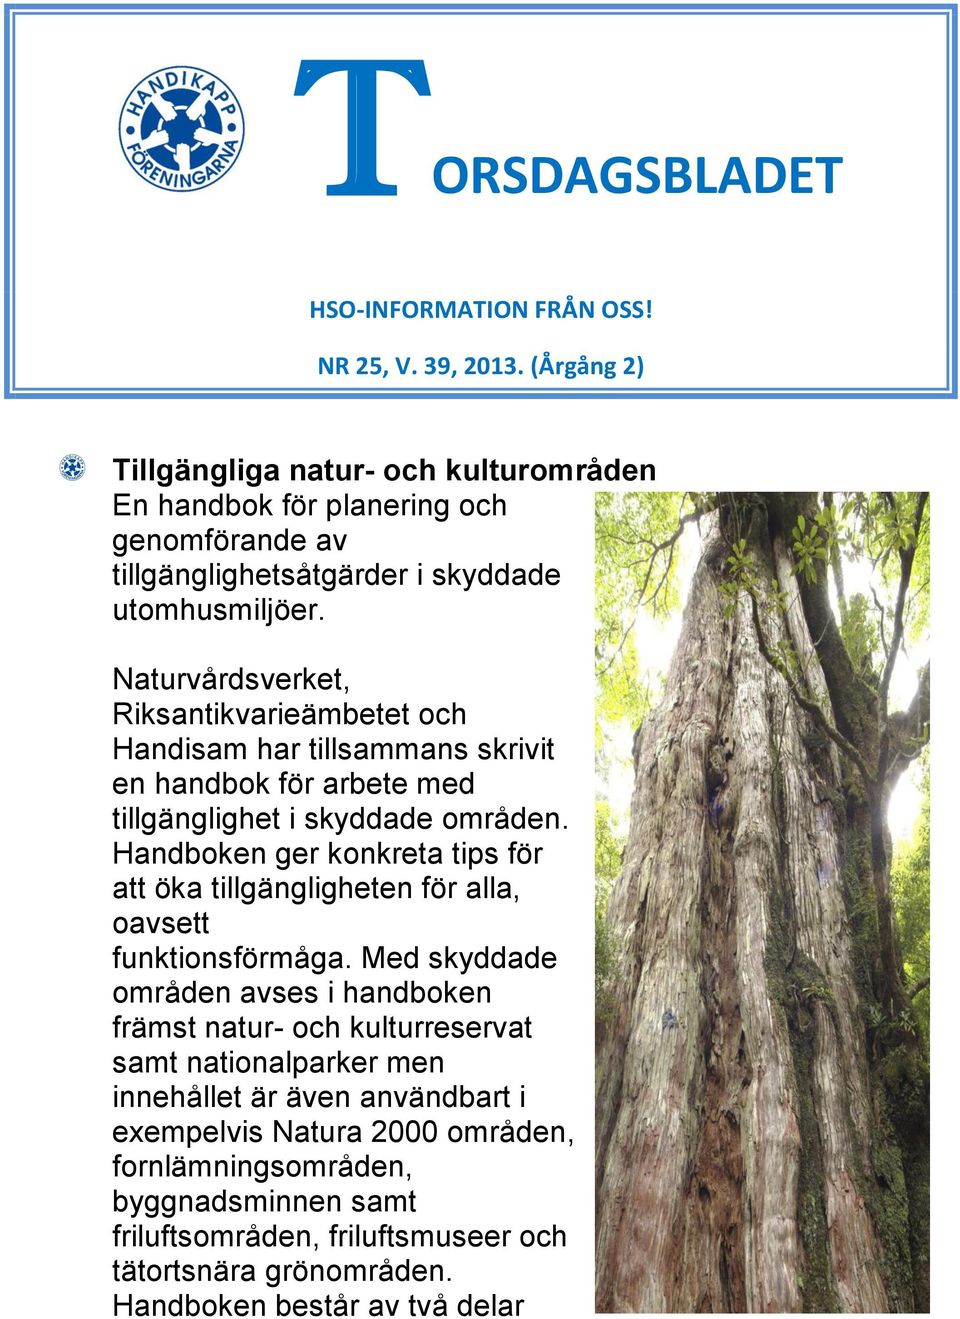 Naturvårdsverket, Riksantikvarieämbetet och Handisam har tillsammans skrivit en handbok för arbete med tillgänglighet i skyddade områden.